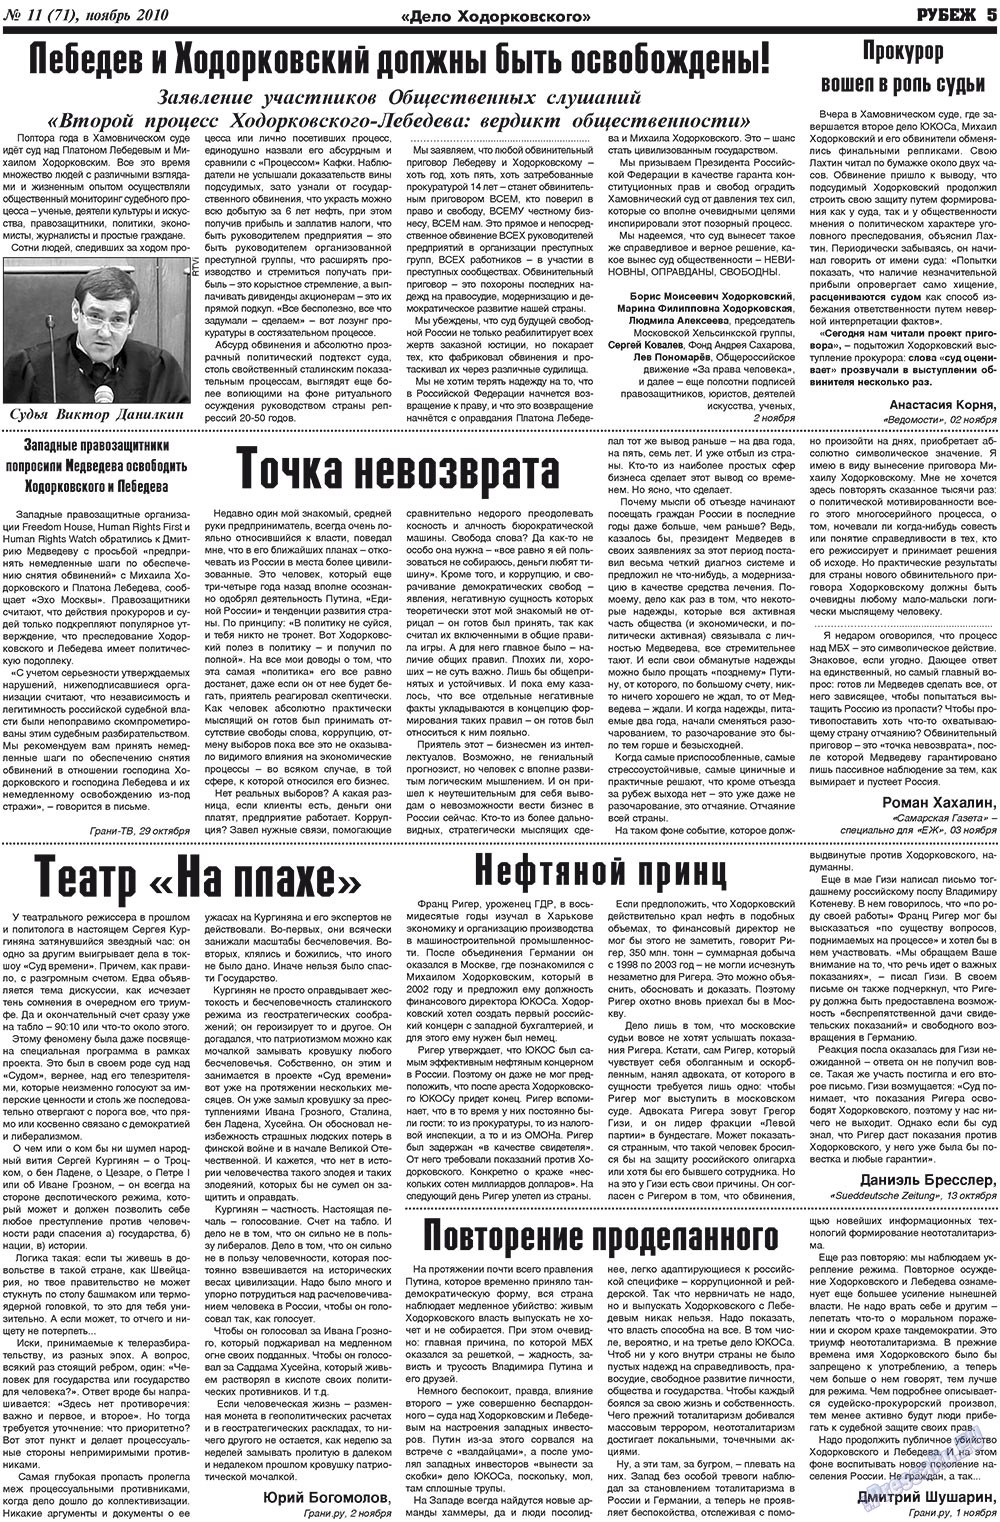 Рубеж (газета). 2010 год, номер 11, стр. 5